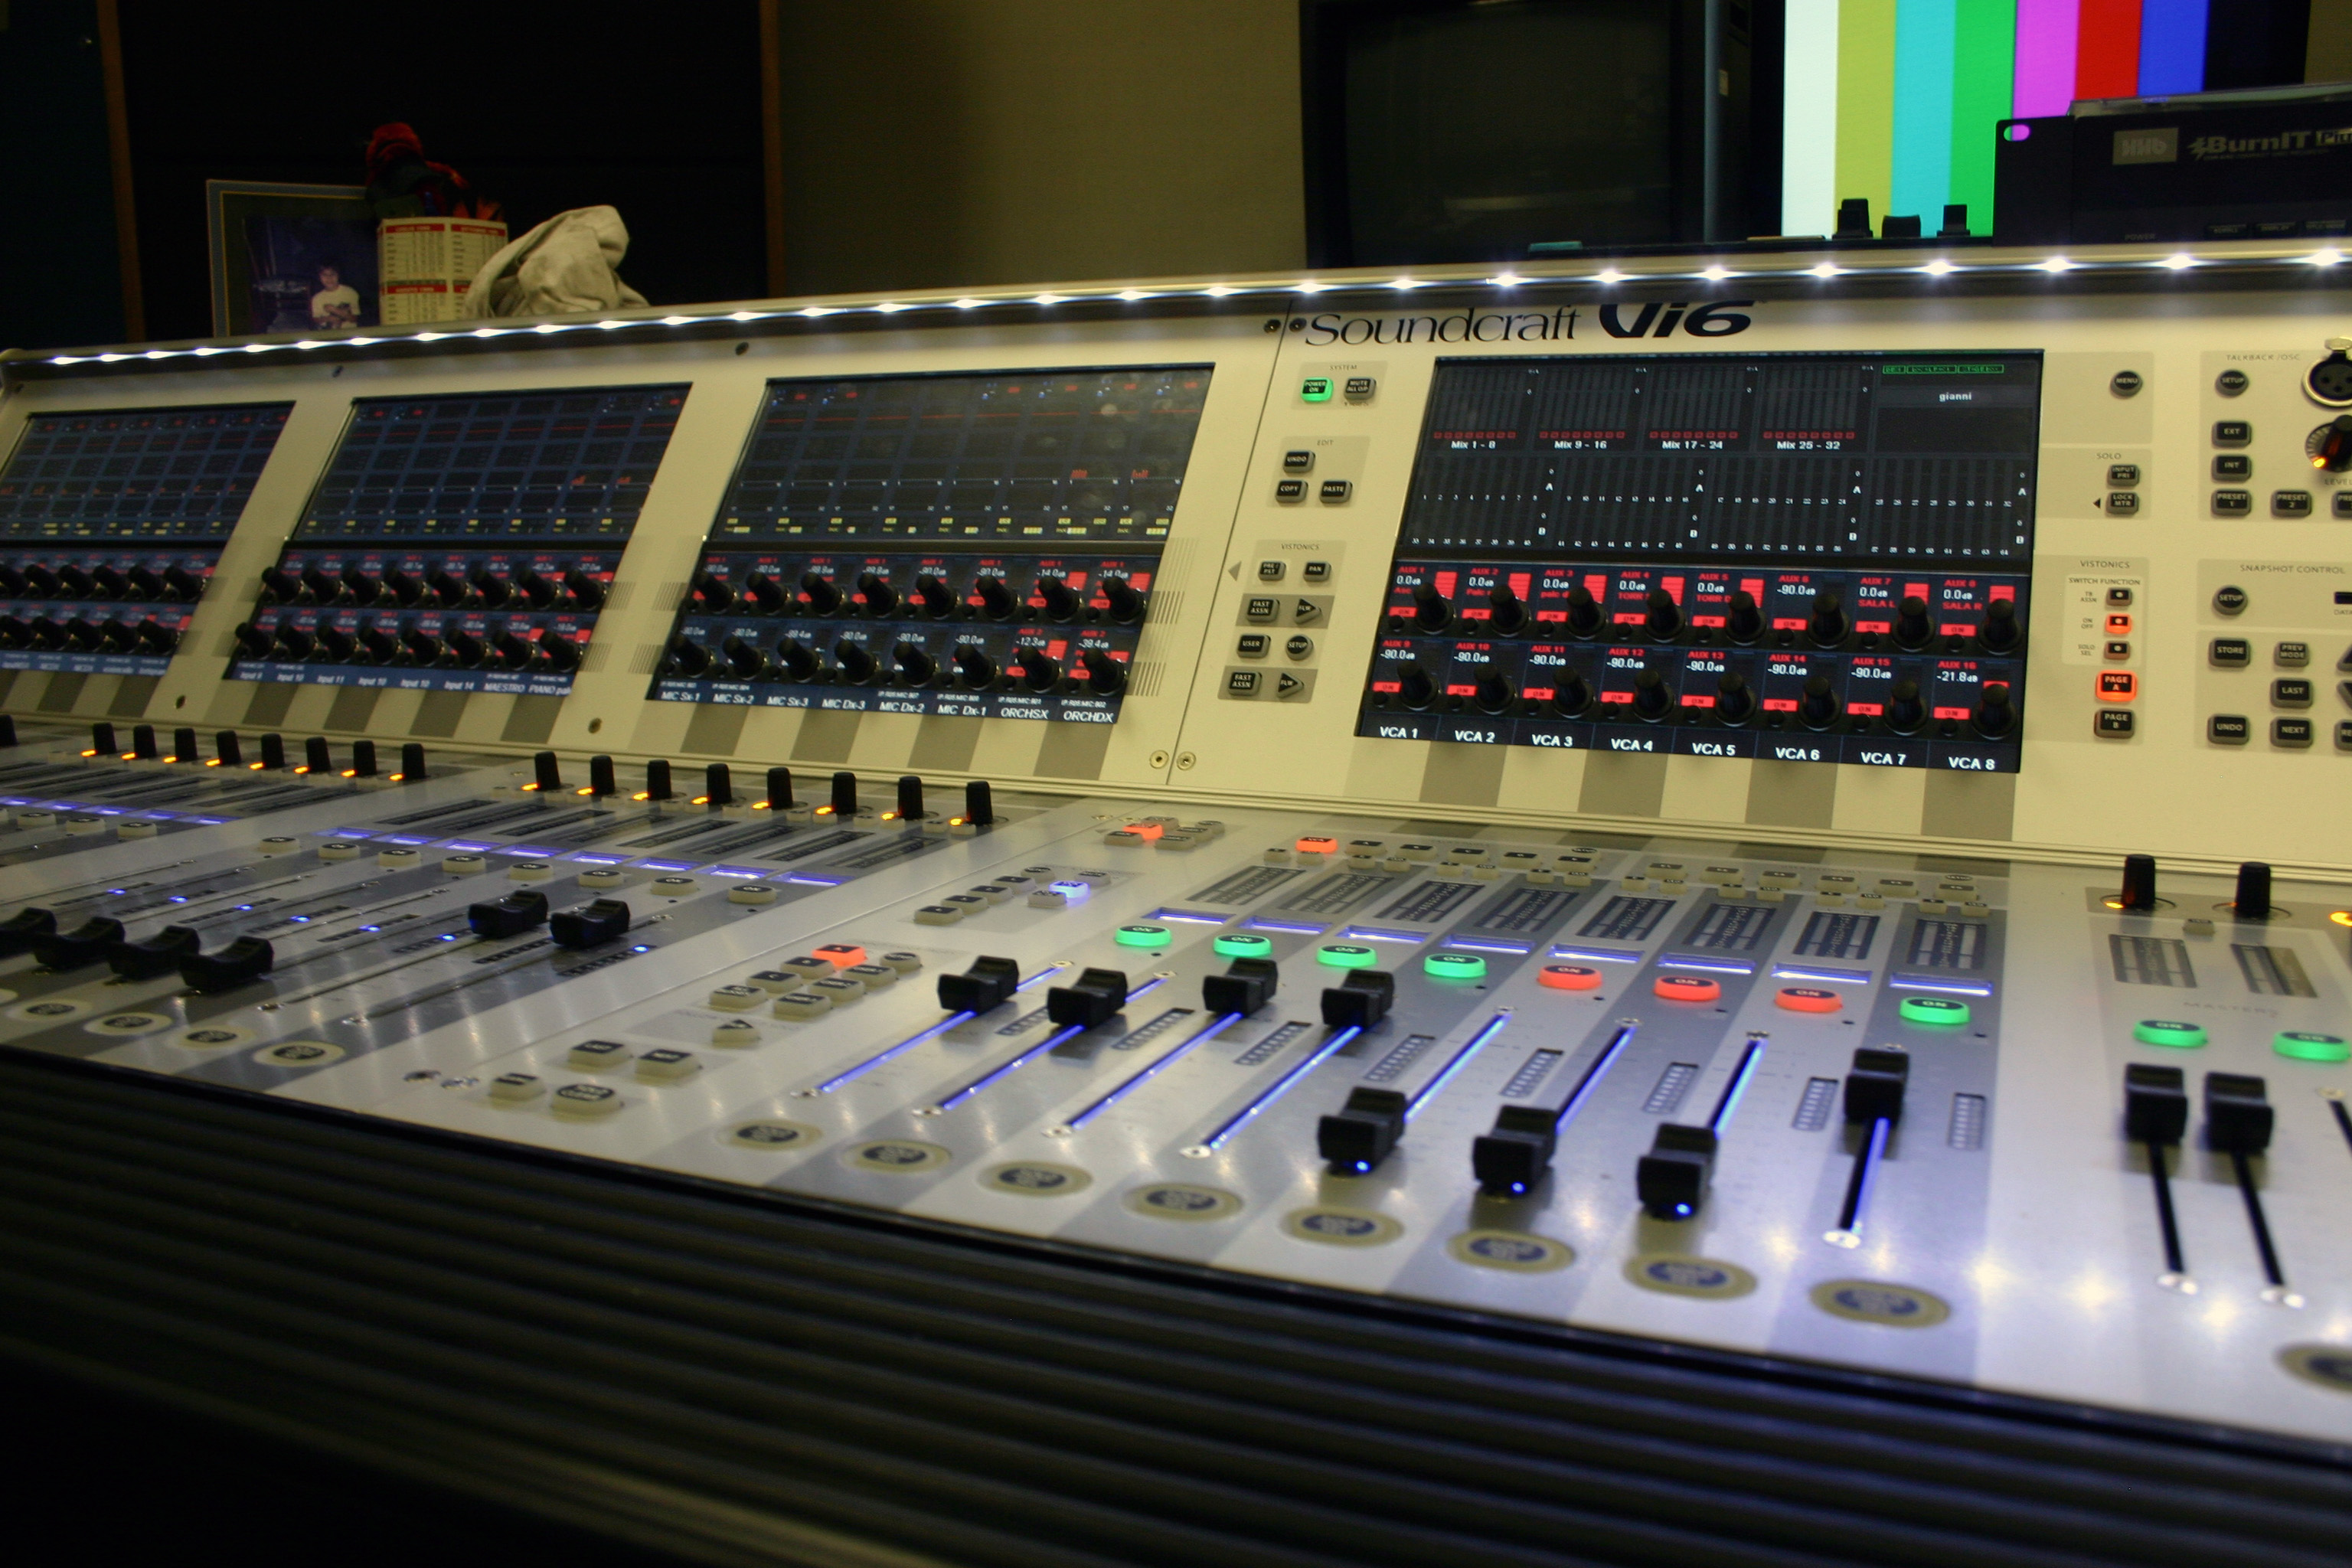 Il grande mixer audio digitale che controlla tutti i segnali audio provenienti o destinati alla sala